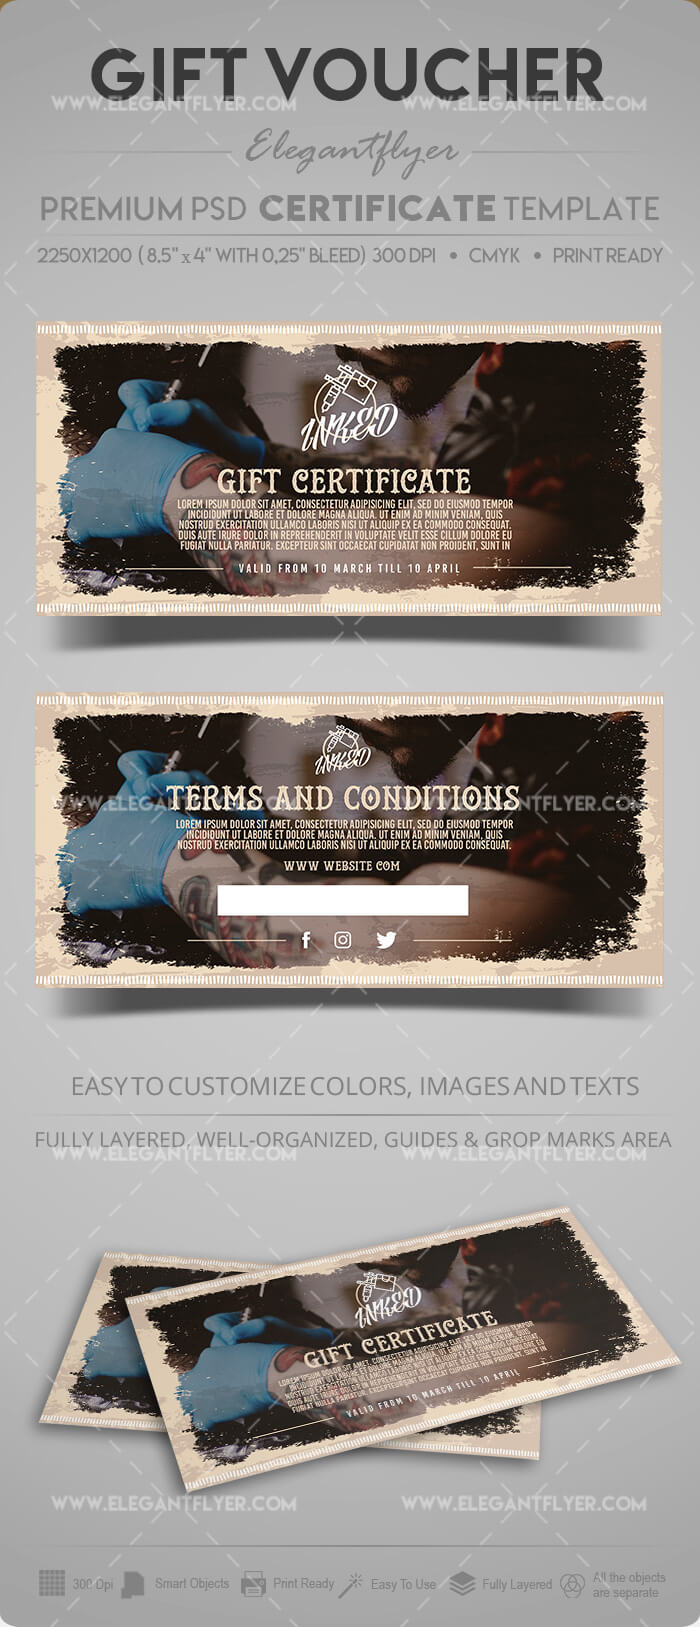 Tattoo Salon – Gift Certificate Template In Psd For Tattoo Gift Certificate Template